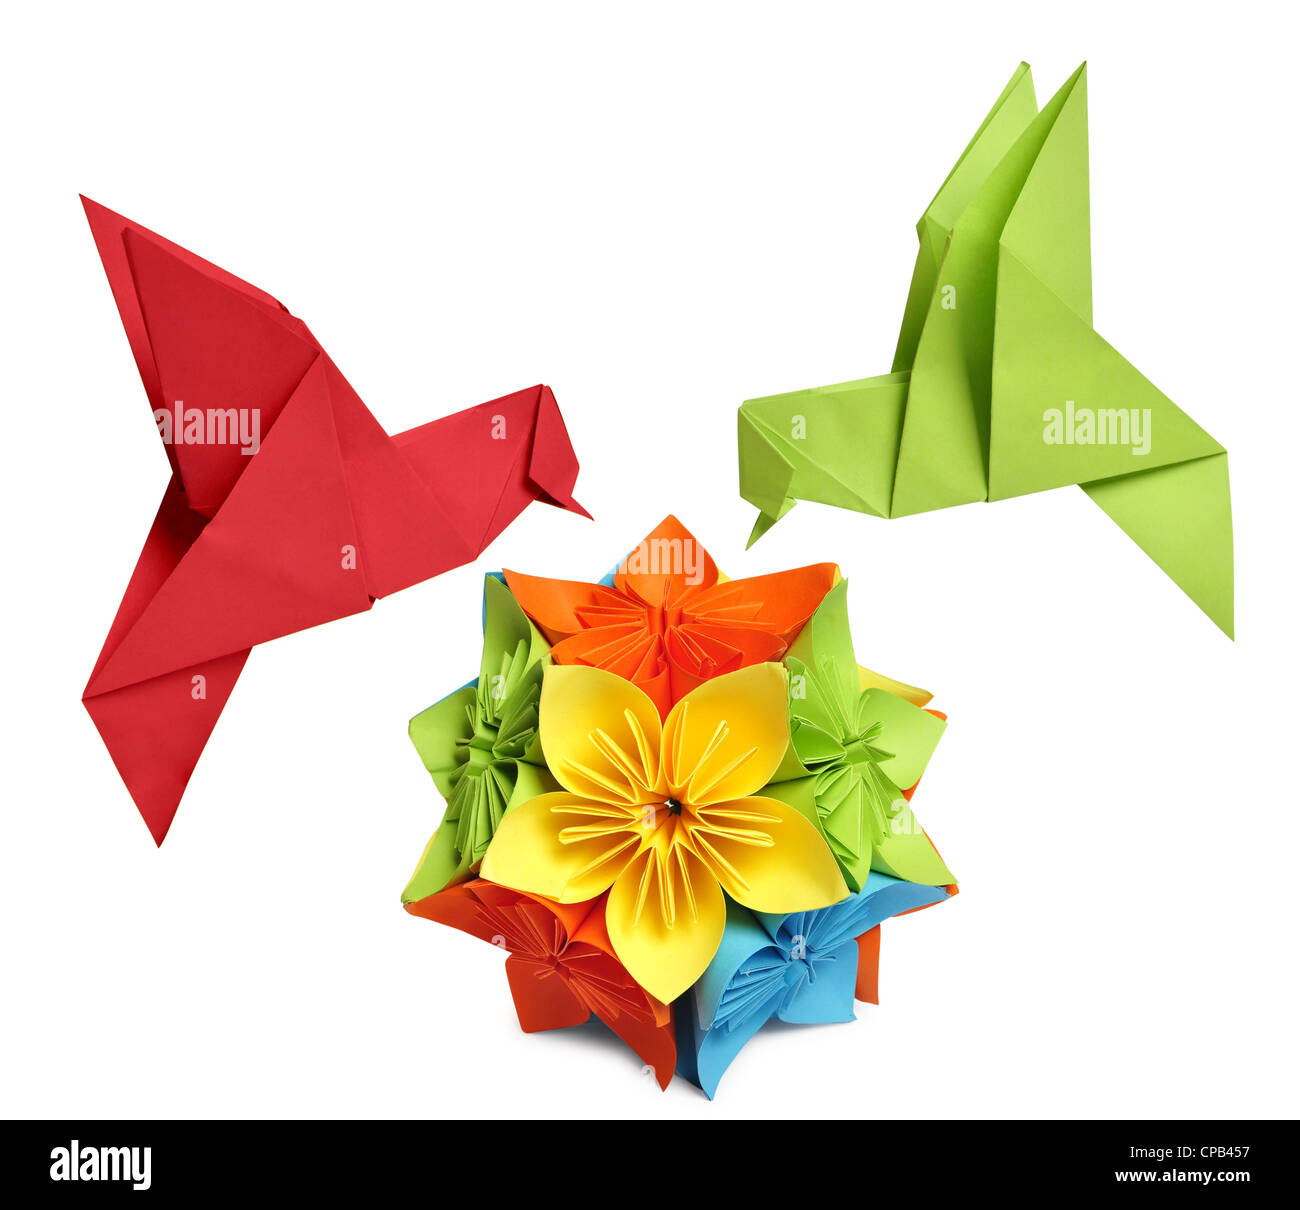 Origami colibrì oltre il fiore kusudama su sfondo bianco Foto Stock